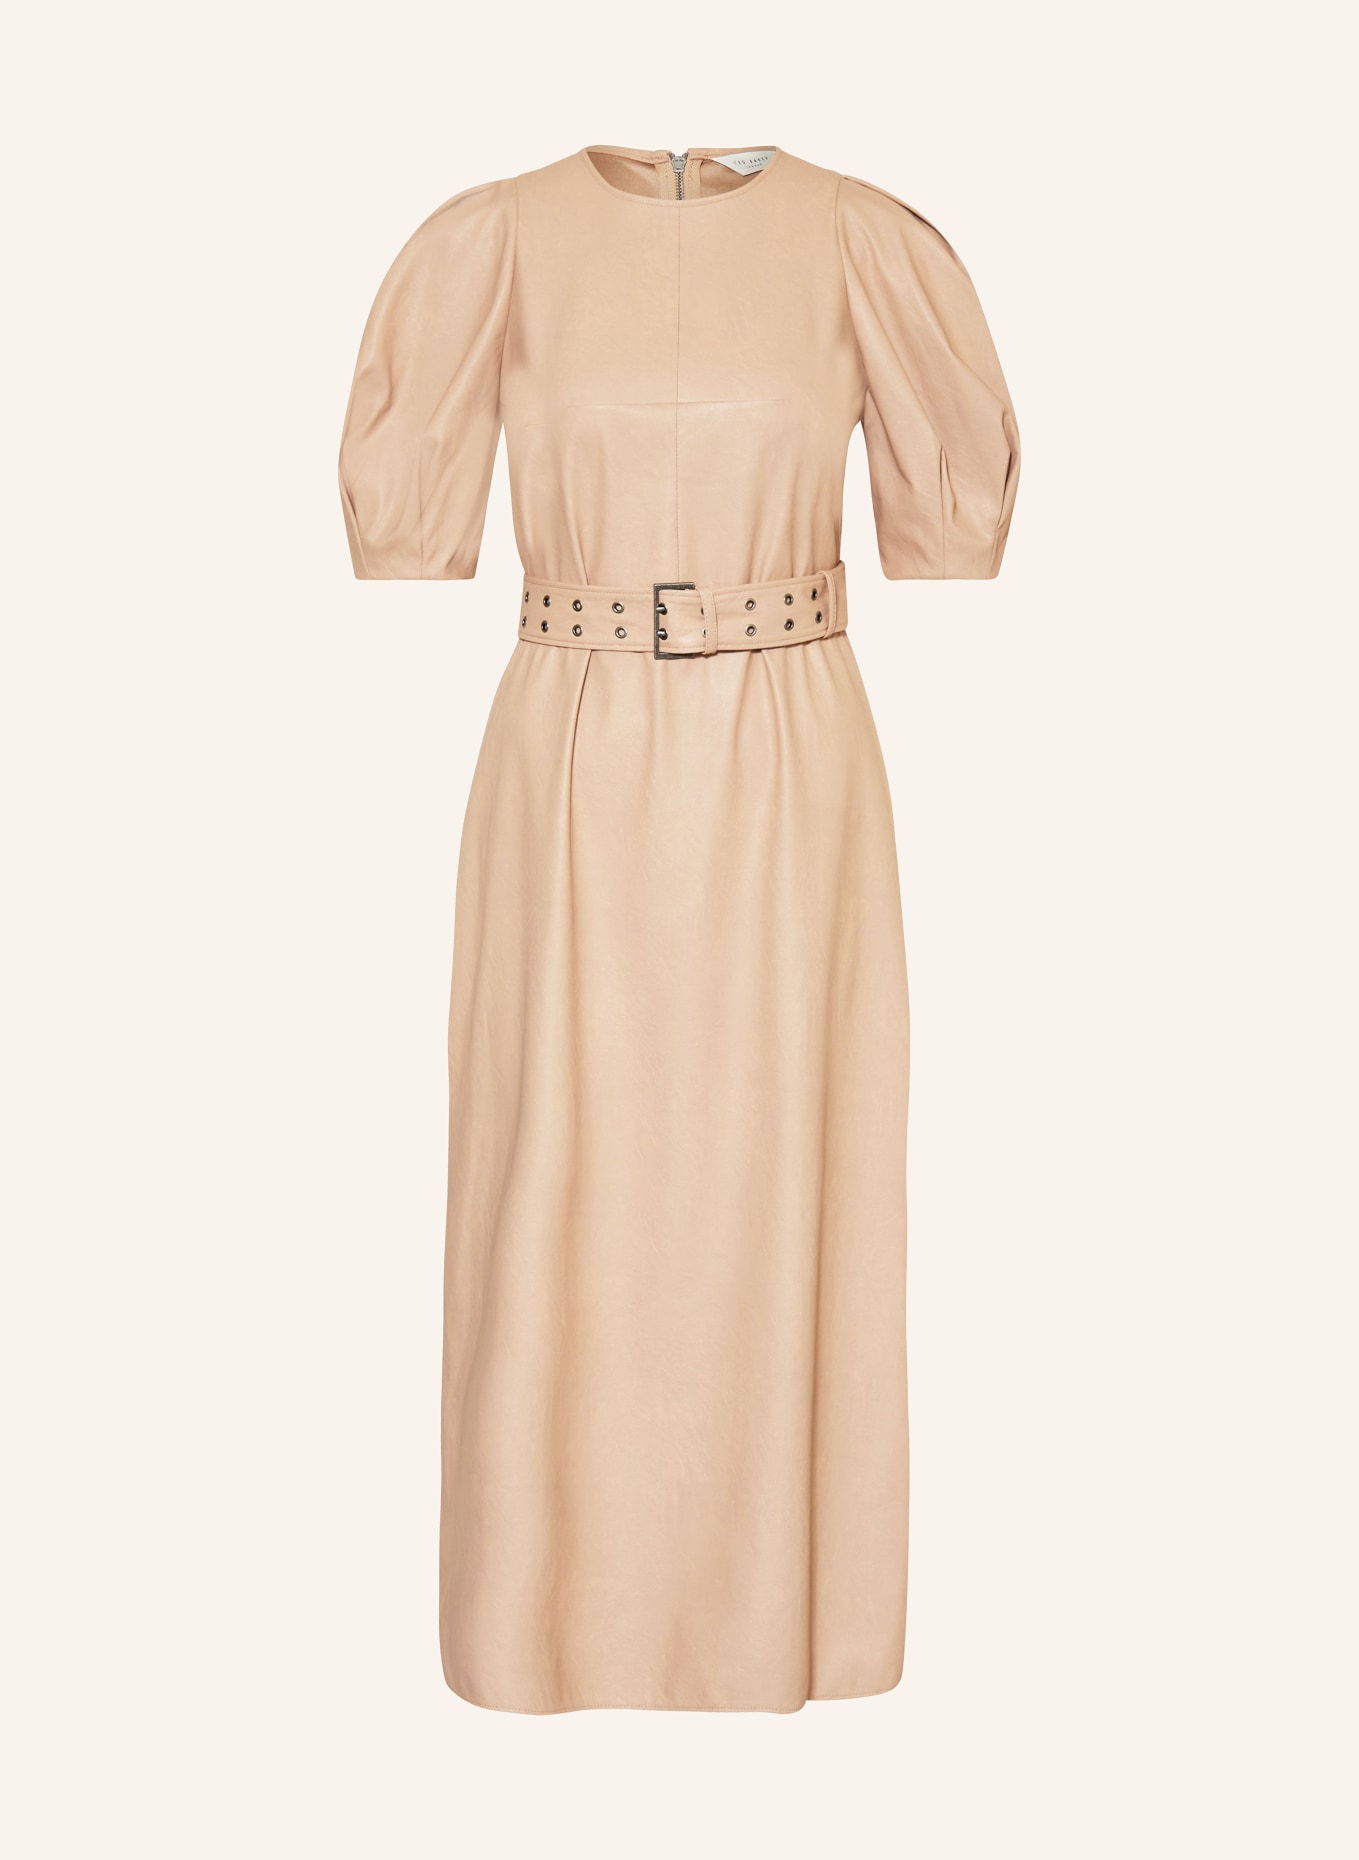 TED BAKER Kleid PALOWMA in Lederoptik, Farbe: CAMEL (Bild 1)